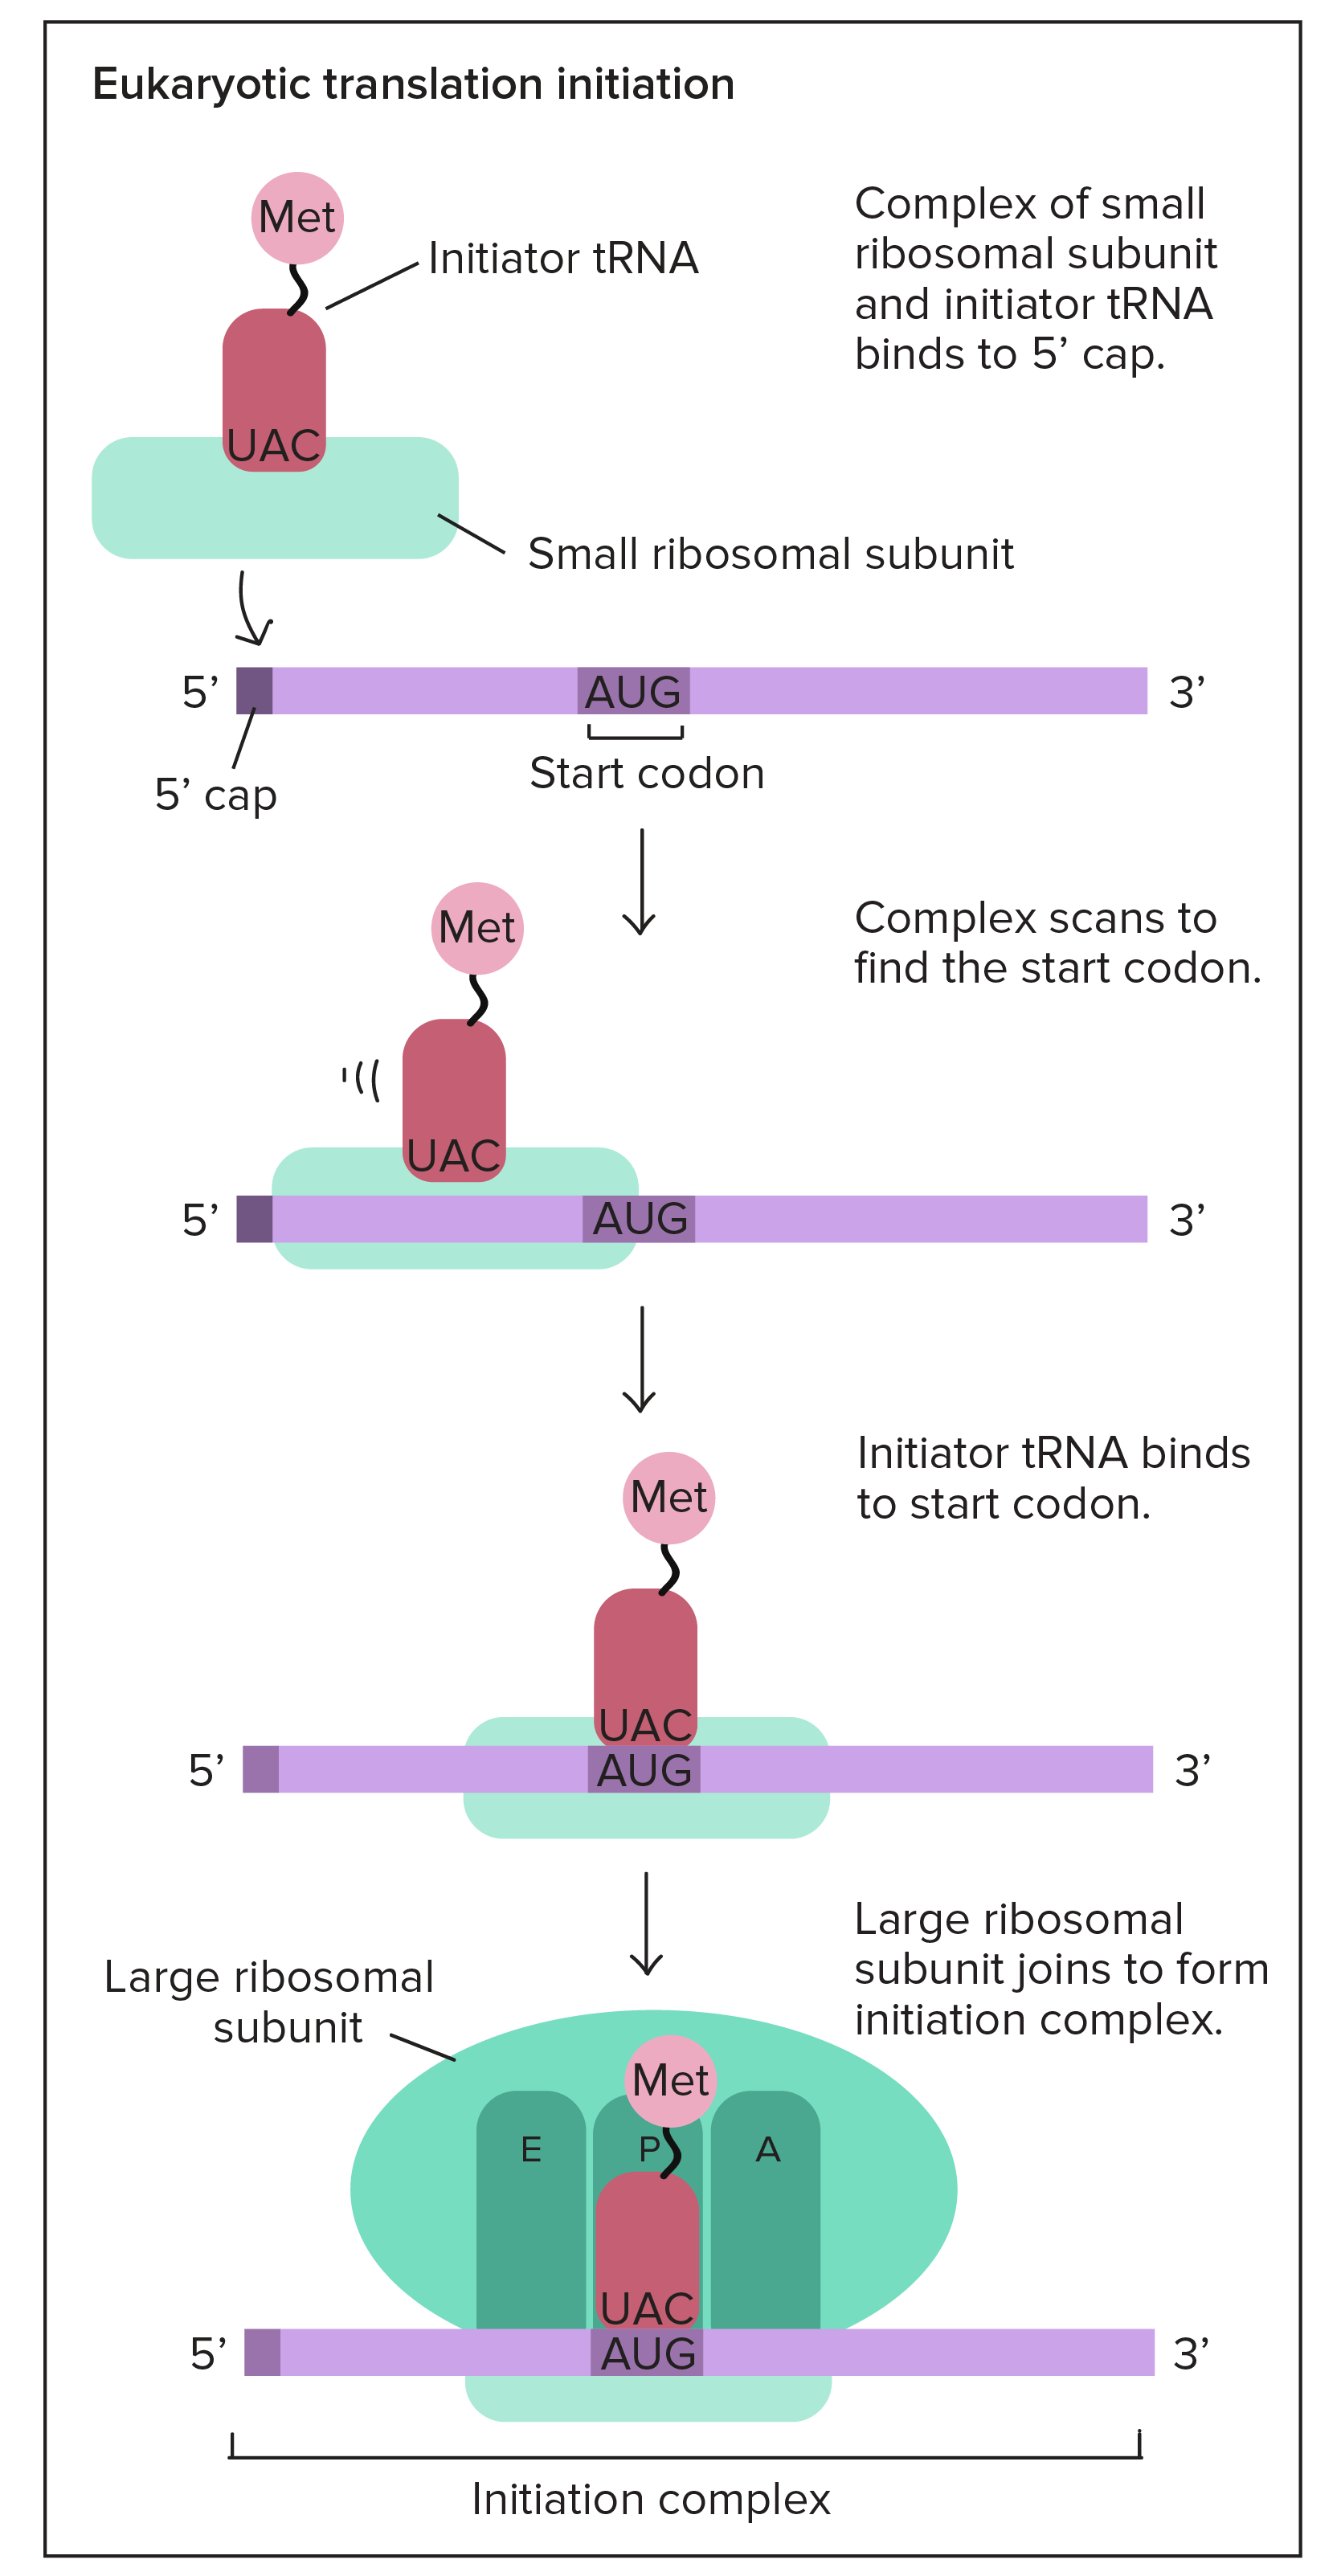 Iniciação da tradução eucariótica:

1. Complexo de subunidade ribossômica pequena e RNAt iniciador (transportando metionina) se liga ao 5' do RNAm.
2. O complexo escaneia do 5' para o 3' para encontrar o códon de iniciação (AUG).
3. O RNAt iniciador se liga ao códon de iniciação.
4. A subunidade ribossômica grande se reúne a RNAm, RNAt iniciador e subunidade ribossômica pequena para formar o complexo de iniciação. O RNAt iniciador é posicionado no sítio P do ribossomo montado.

Essas etapas são auxiliadas por fatores de iniciação (não representados no diagrama).